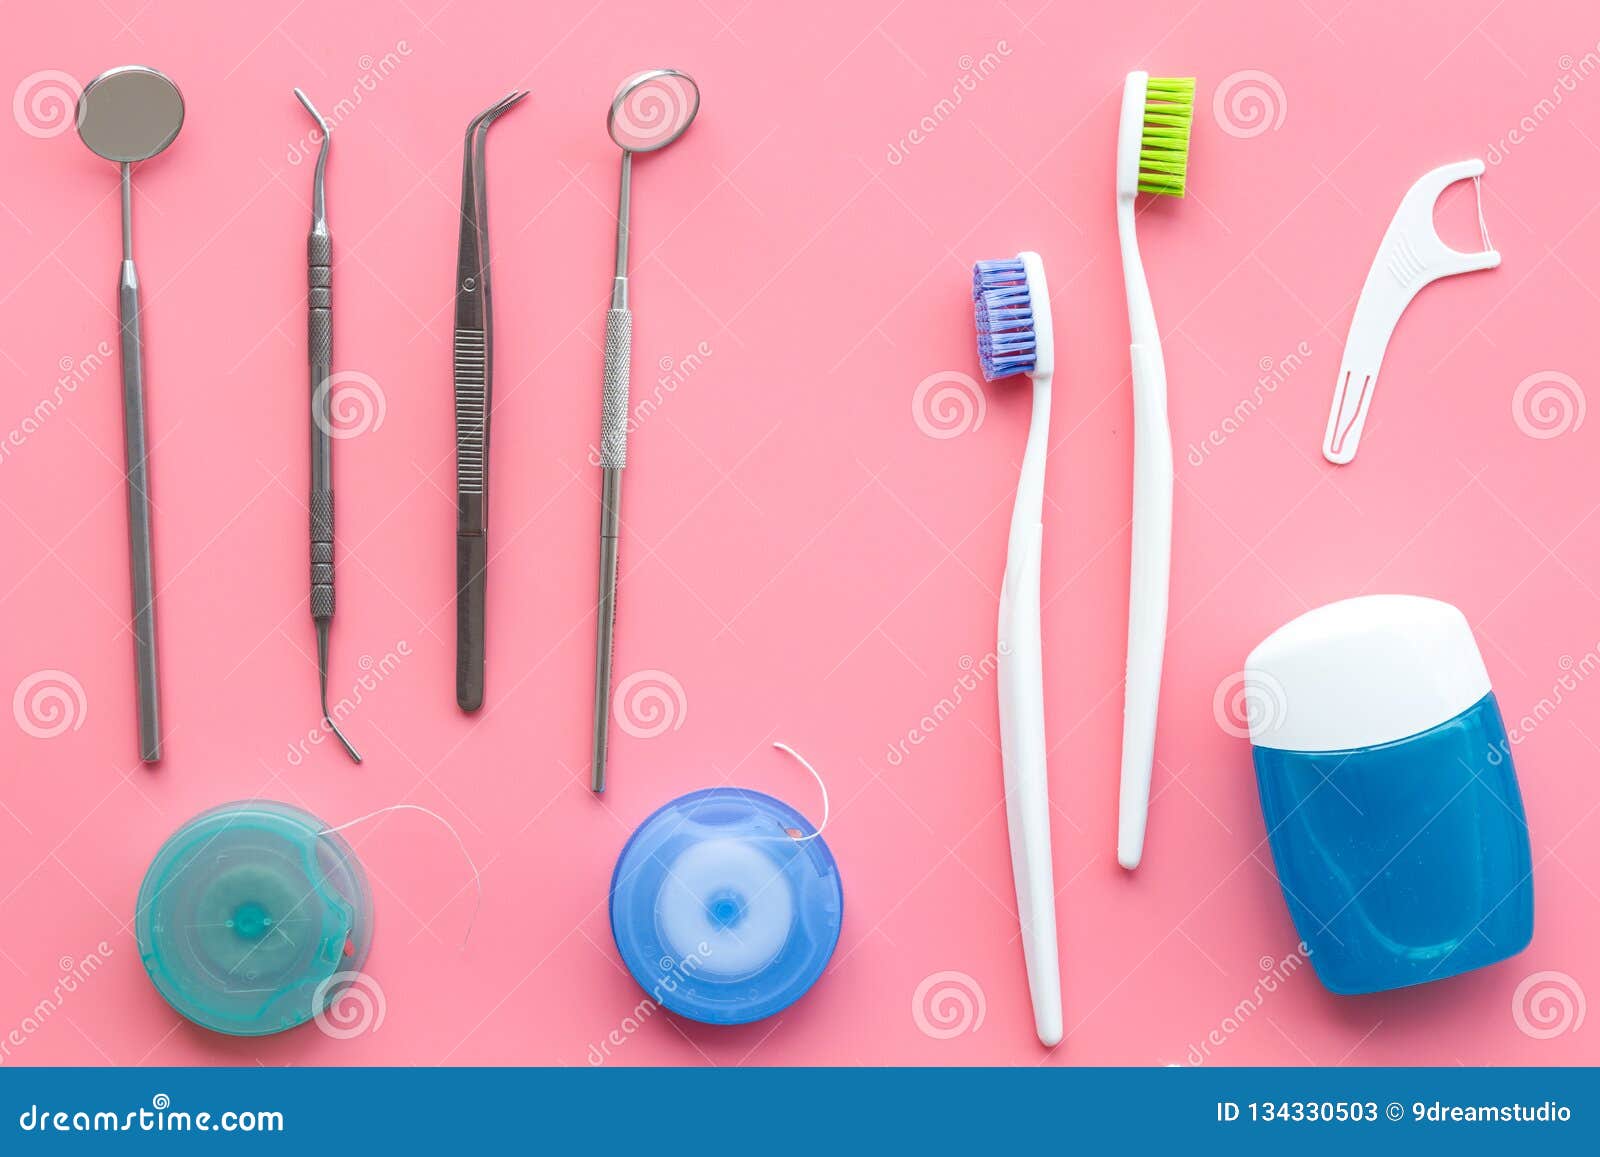 Higiene Oral Diaria Para La Familia Cepillo De Dientes, Seda Dental E Instrumentos Del Dentista En La Opinión Superior Del Fondo Imagen de archivo - Imagen de equipo, enjuague: